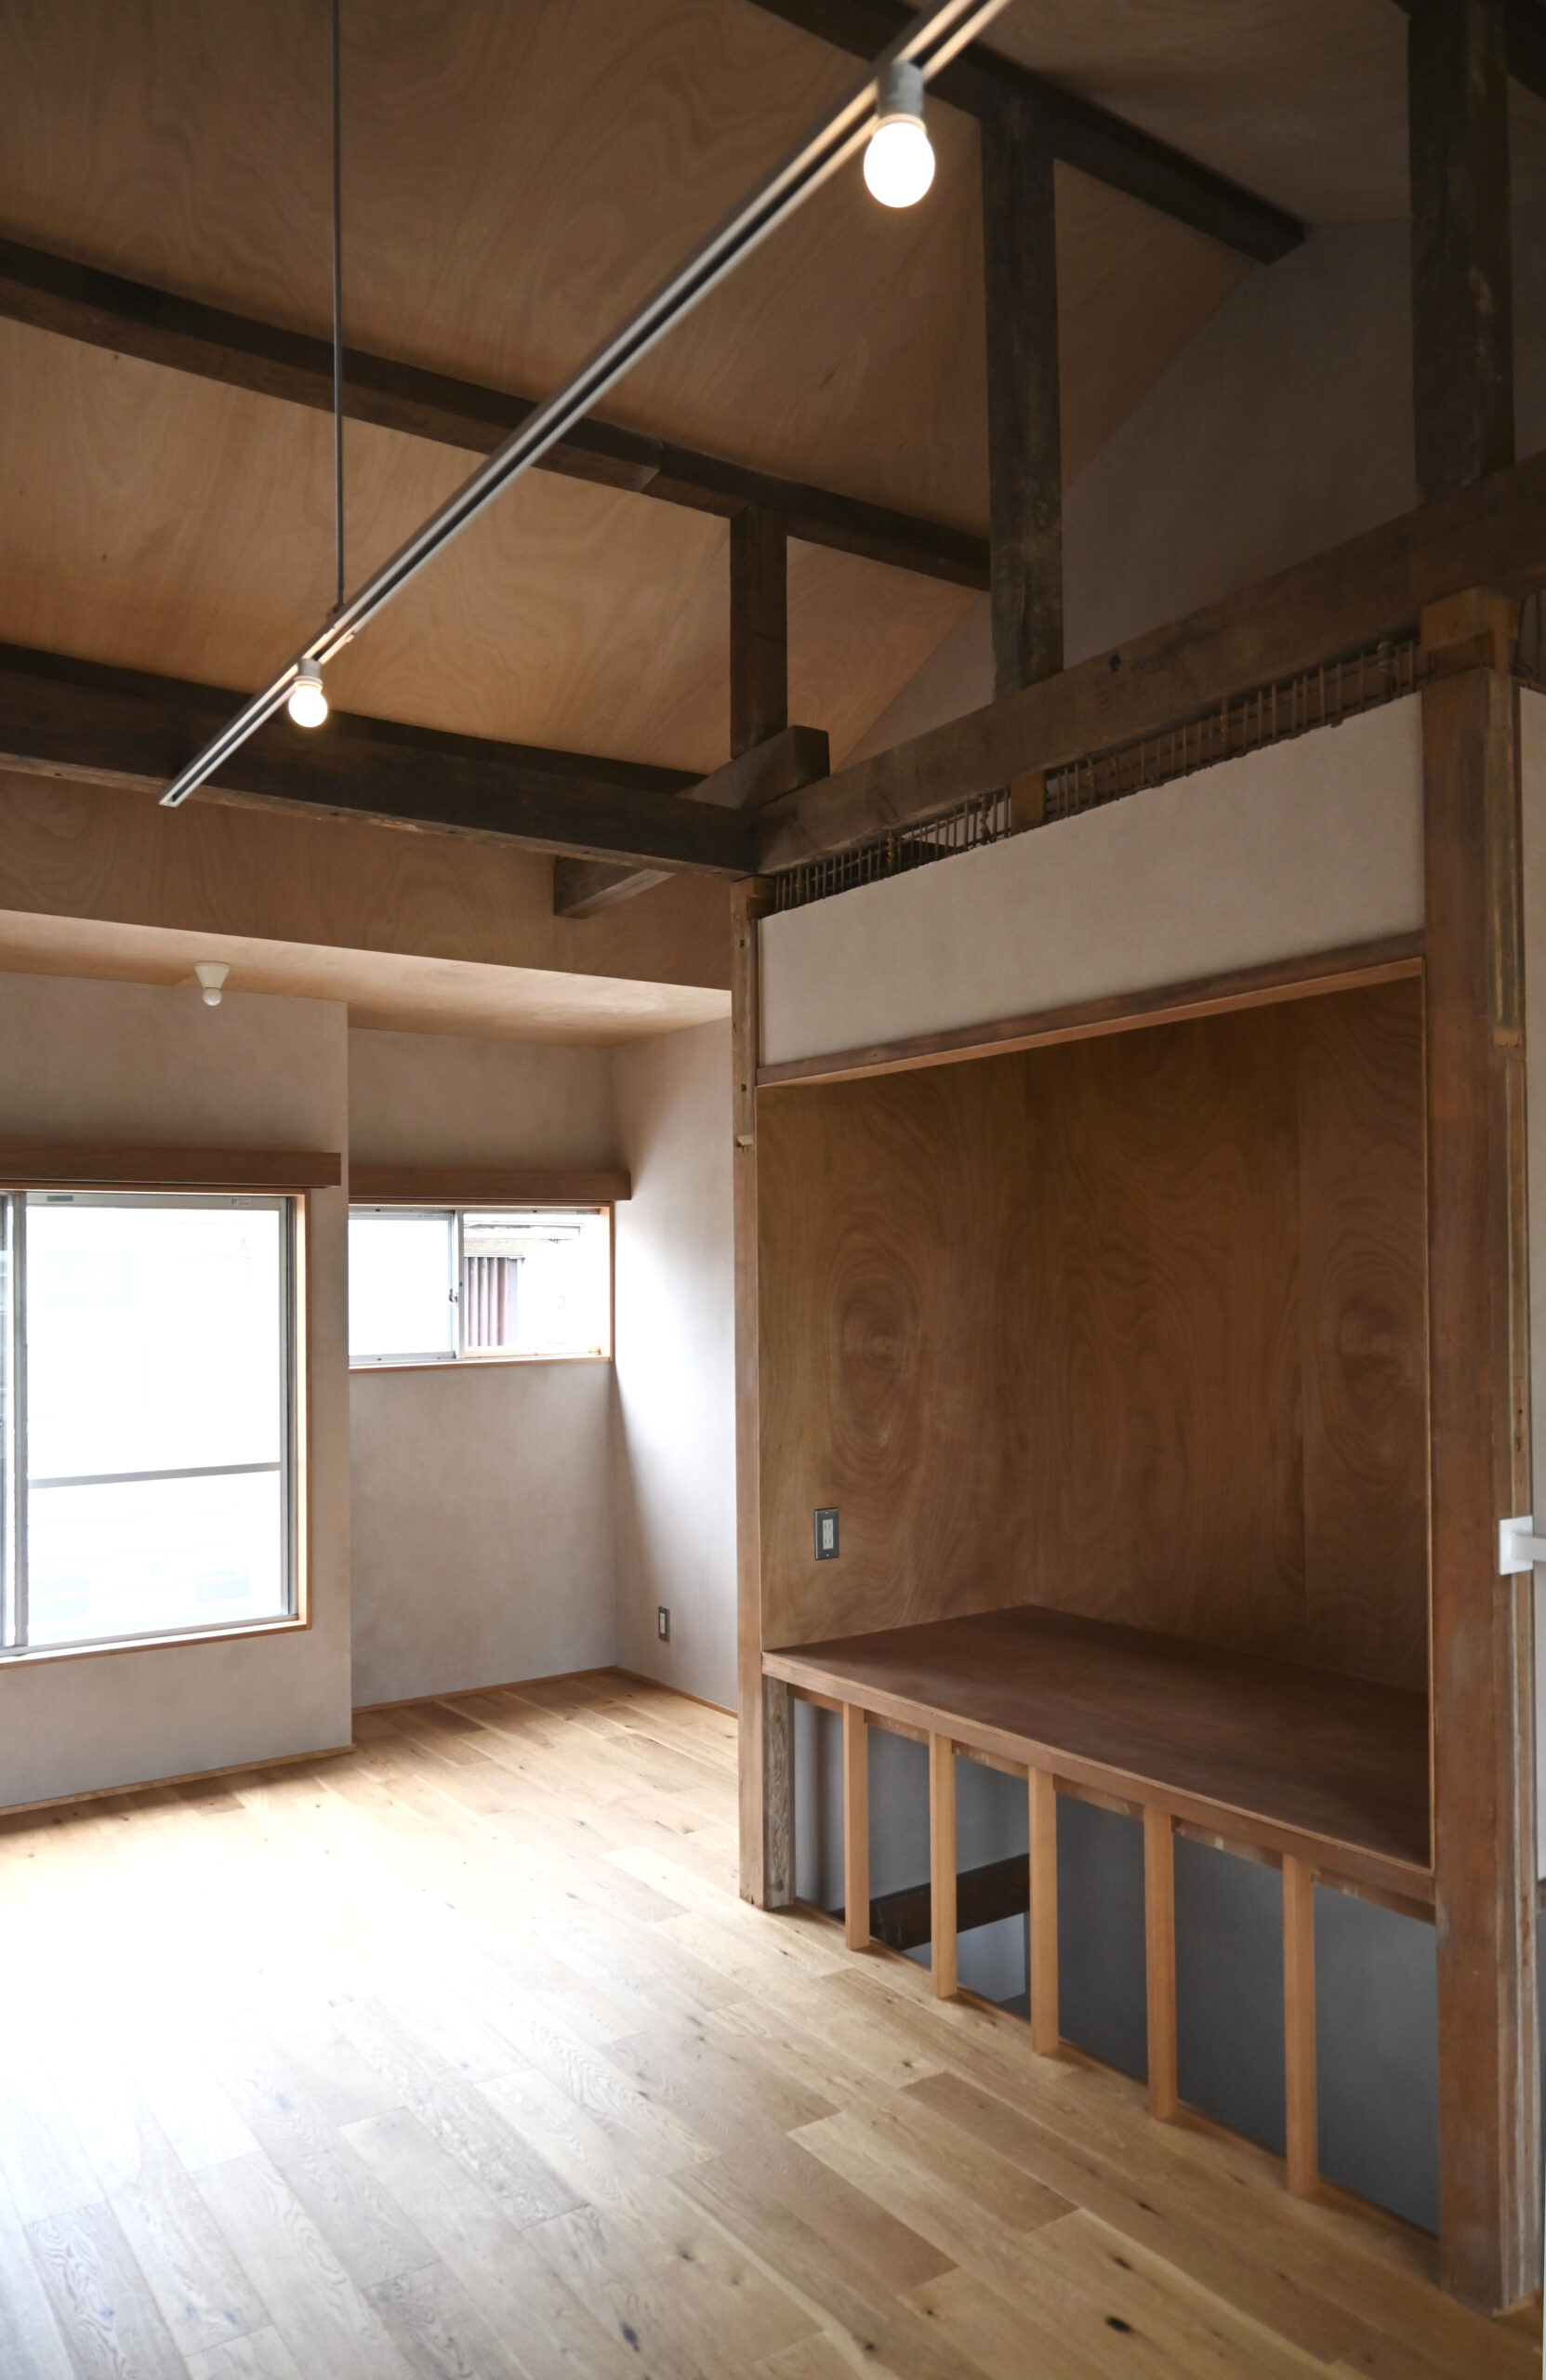 長屋リノベーションの和室の収納をそのまま生かして、天井あらわし、土壁の竹格子を見せるデザイン、日本家屋で暮らす